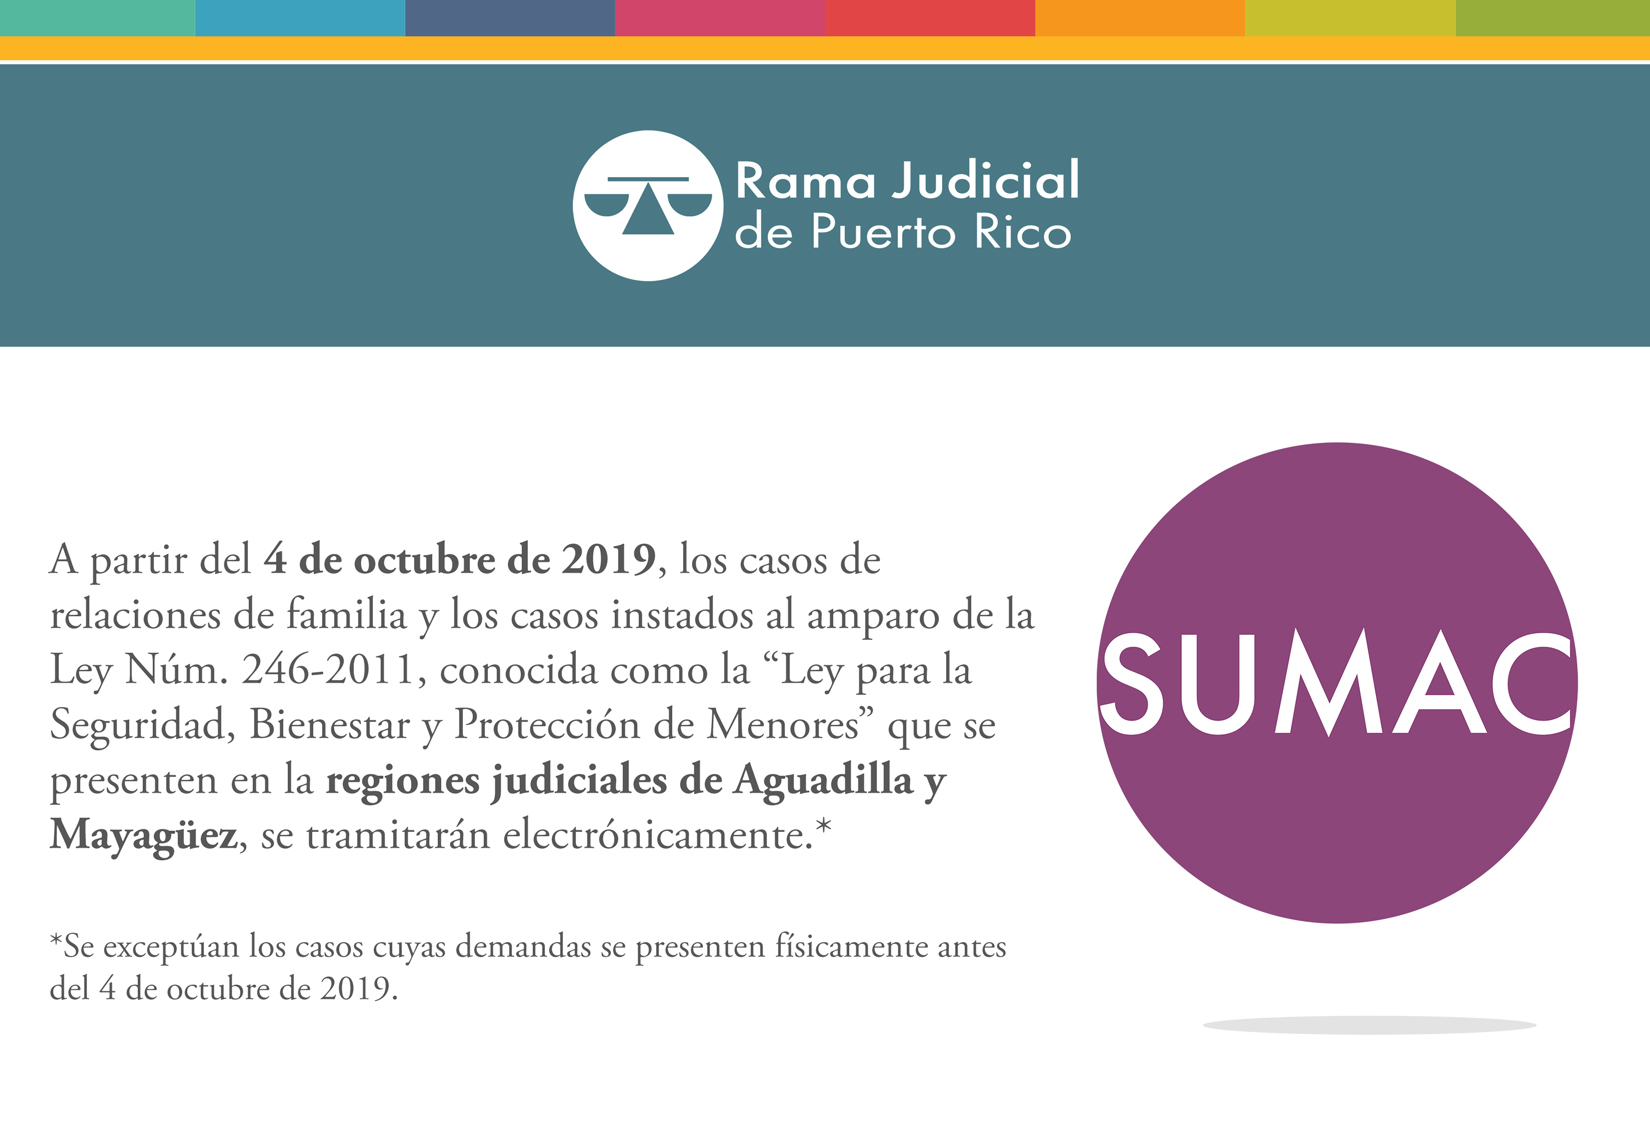 A partir del 4 de octubre de 2019, los casos de relaciones de familia y los casos instados al amparo de la Ley Núm 246-2011 de las regiones de Aguadilla y Mayagüez se tramitarán electrónicamente